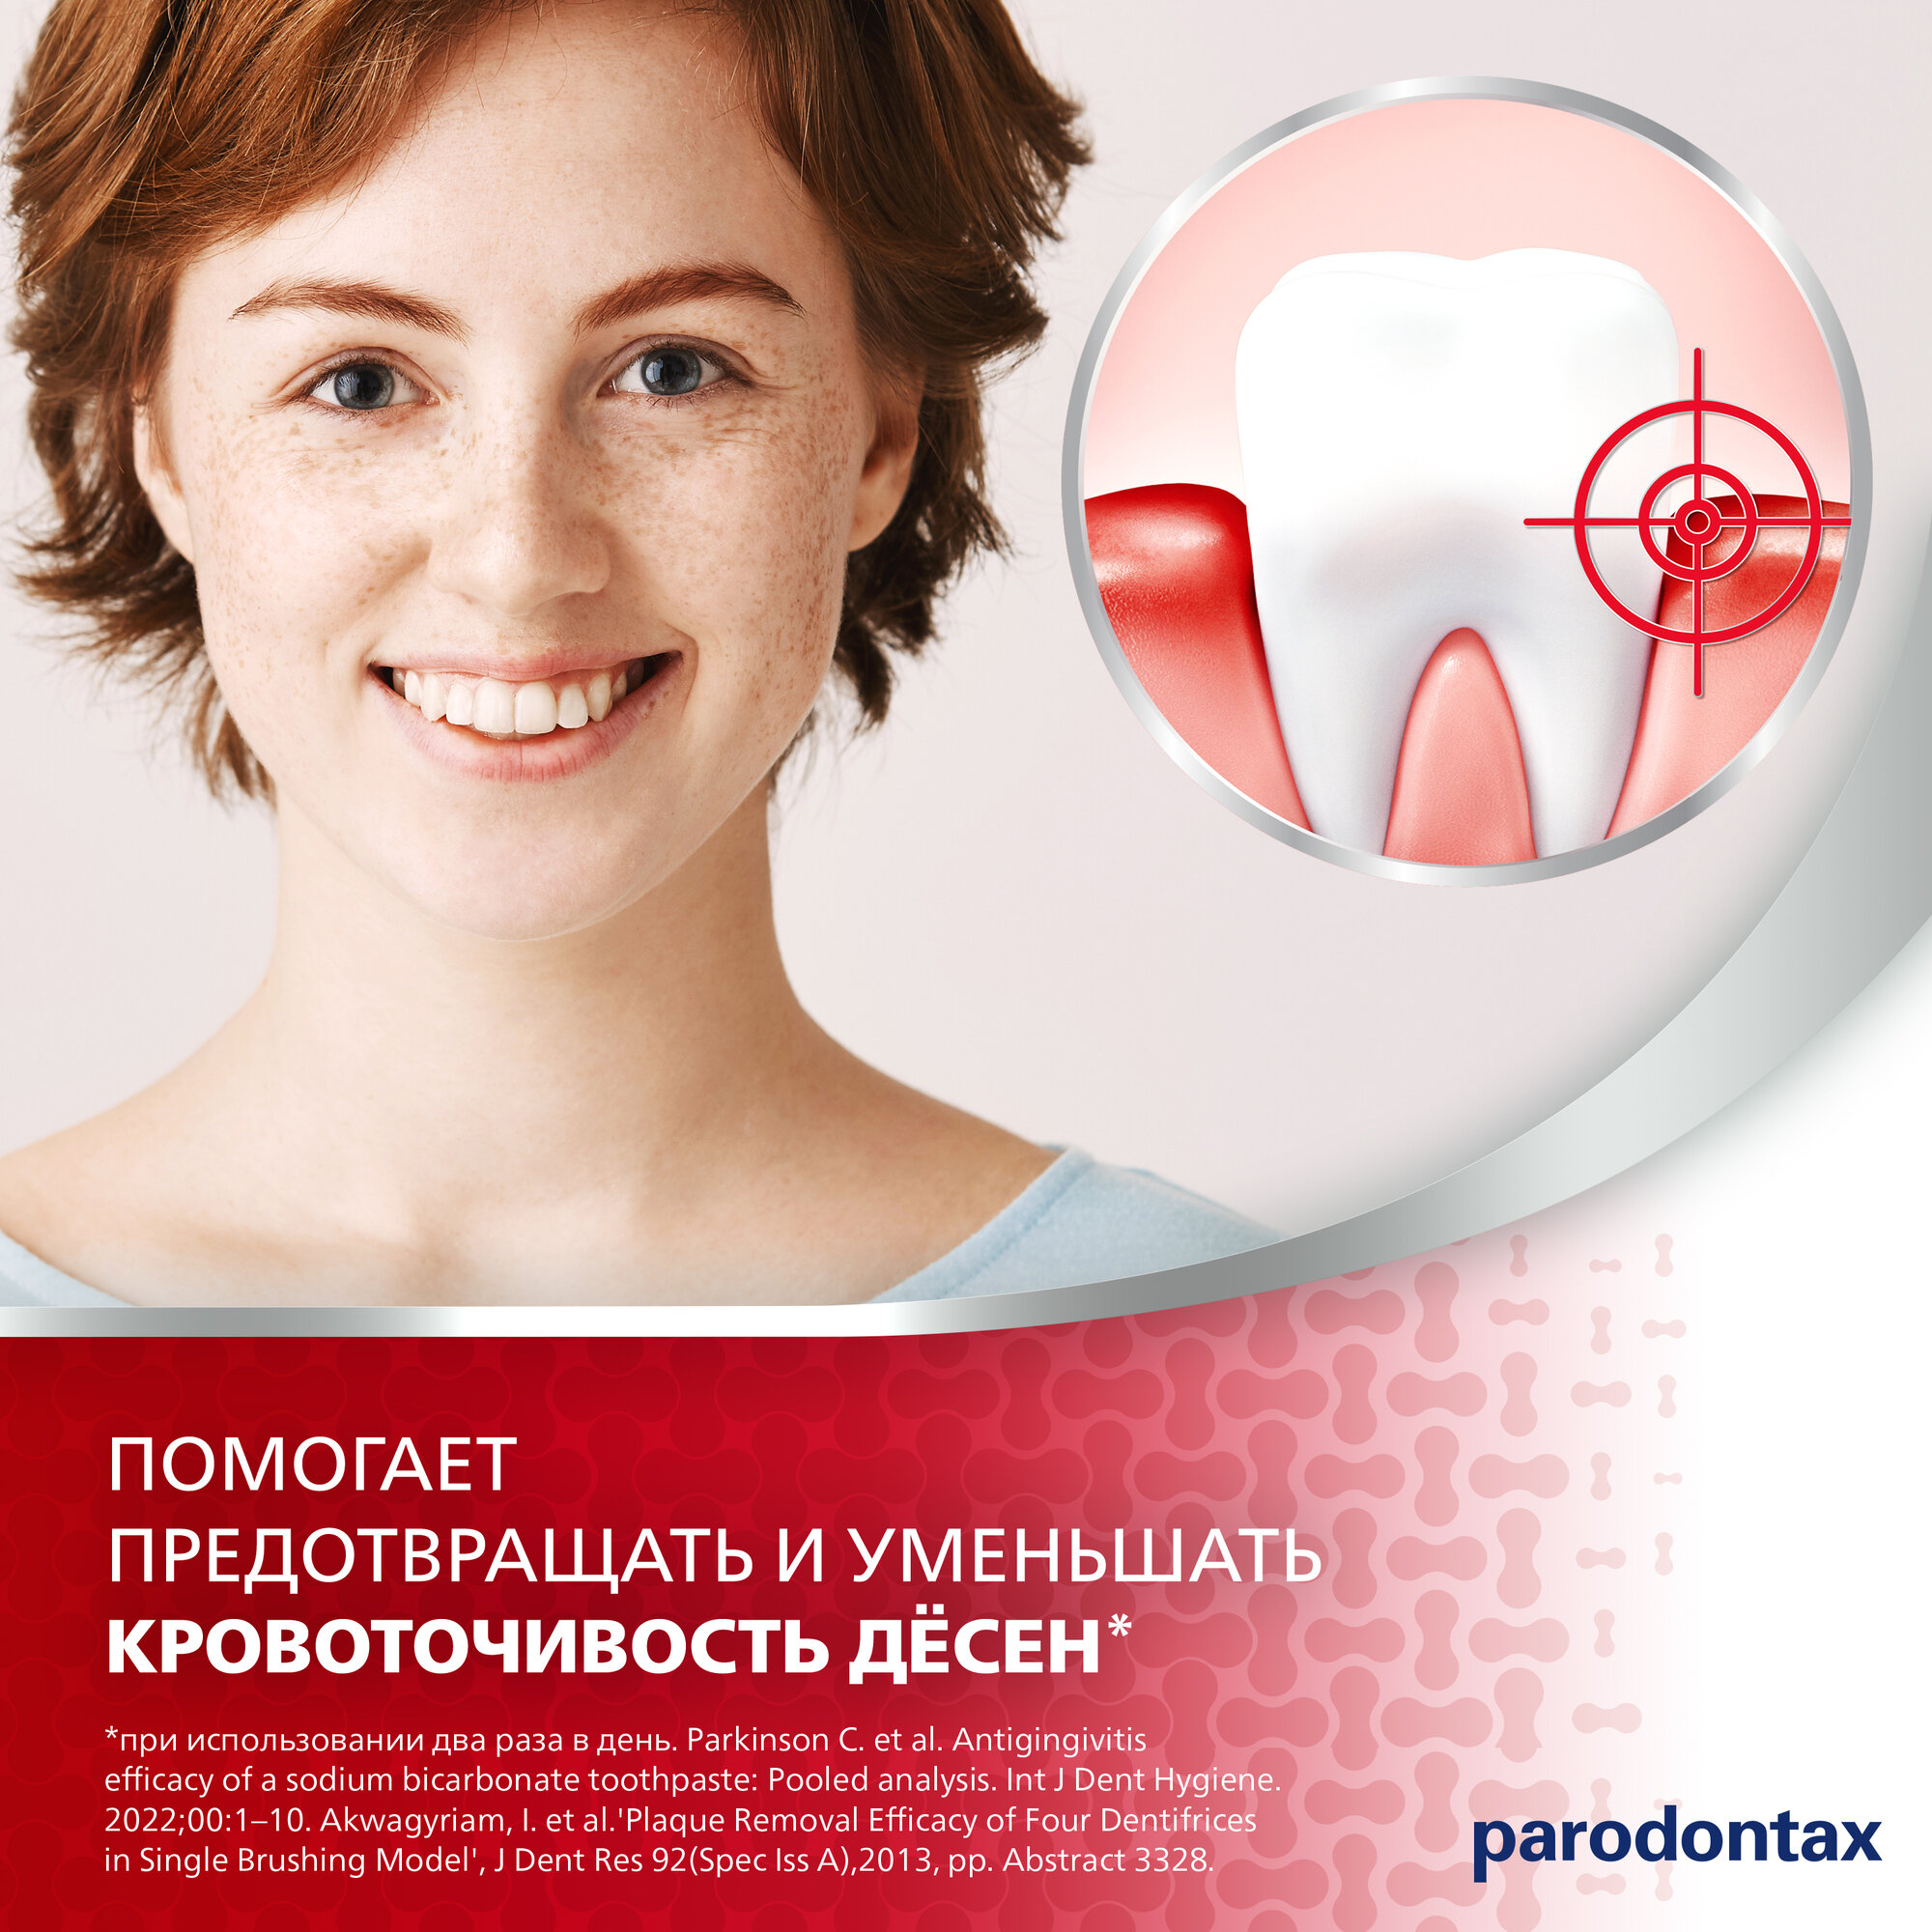 Зубная паста parodontax без Фтора от воспаления и кровоточивости десен для удаления зубного налета и поддержания здоровья десен, 75 мл